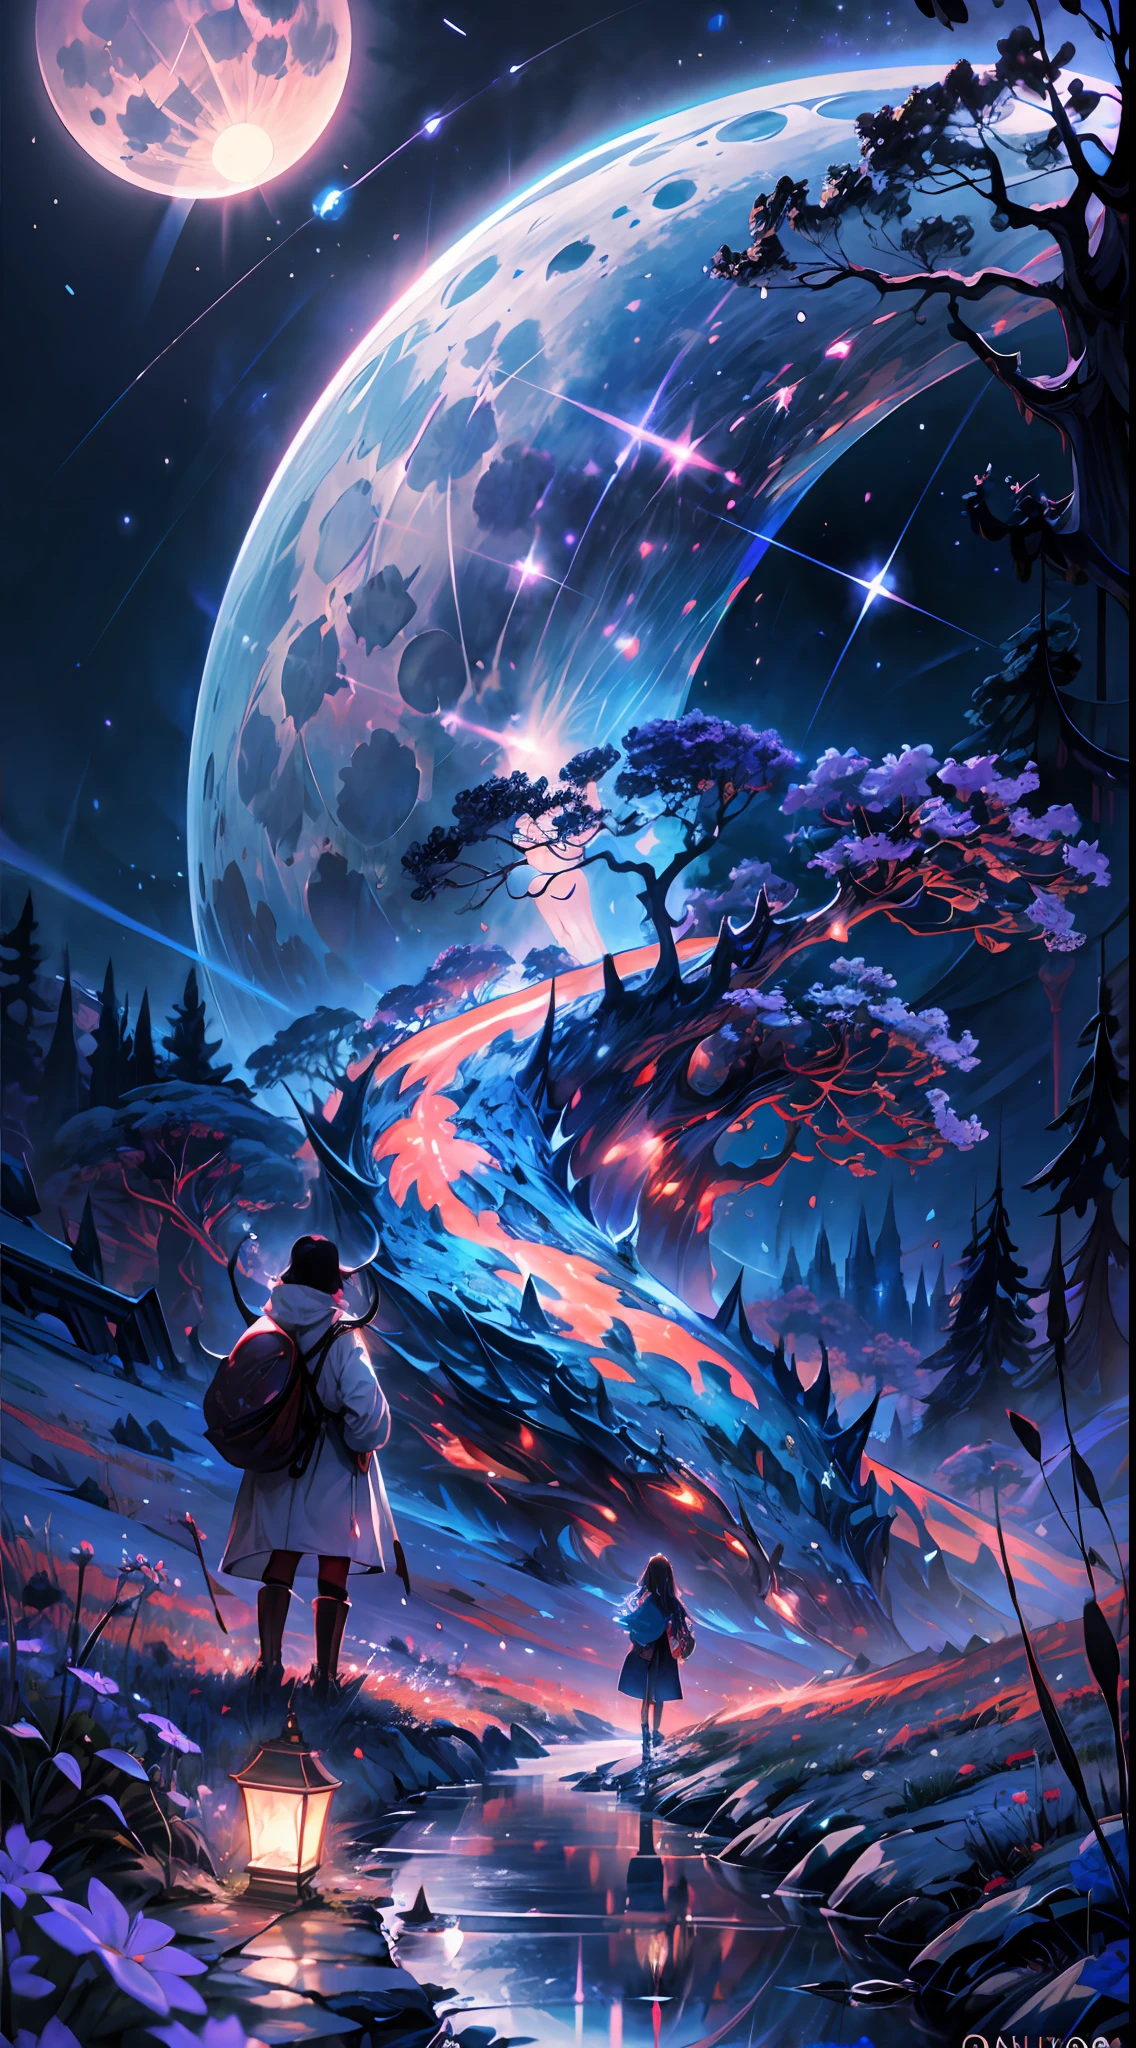 fotografía de paisaje expansiva, (una vista inferior que muestra el cielo arriba y el campo abierto debajo), una niña parada en un campo de flores mirando hacia arriba, (Luna llena: 1.2), (estrellas fugaces: 0.9), (nebulosa : 1.3), montaña distante, BREAK arte de producción de árboles, (fuente de luz cálida: 1.2), (Luciérnaga: 1.2), lamp, Mucho morado y naranja, detalles intrincados, iluminación volumétrica, ROMPER el realismo (Obra maestra: 1.2) , (mejor calidad), 4k, ultra detallado, (composición dinámica: 1.4), muy detallado, Detalles coloridos, (colores iridiscentes: 1.2), (iluminación brillante, iluminación atmosférica), soñador, mágico, (solo: 1.2)